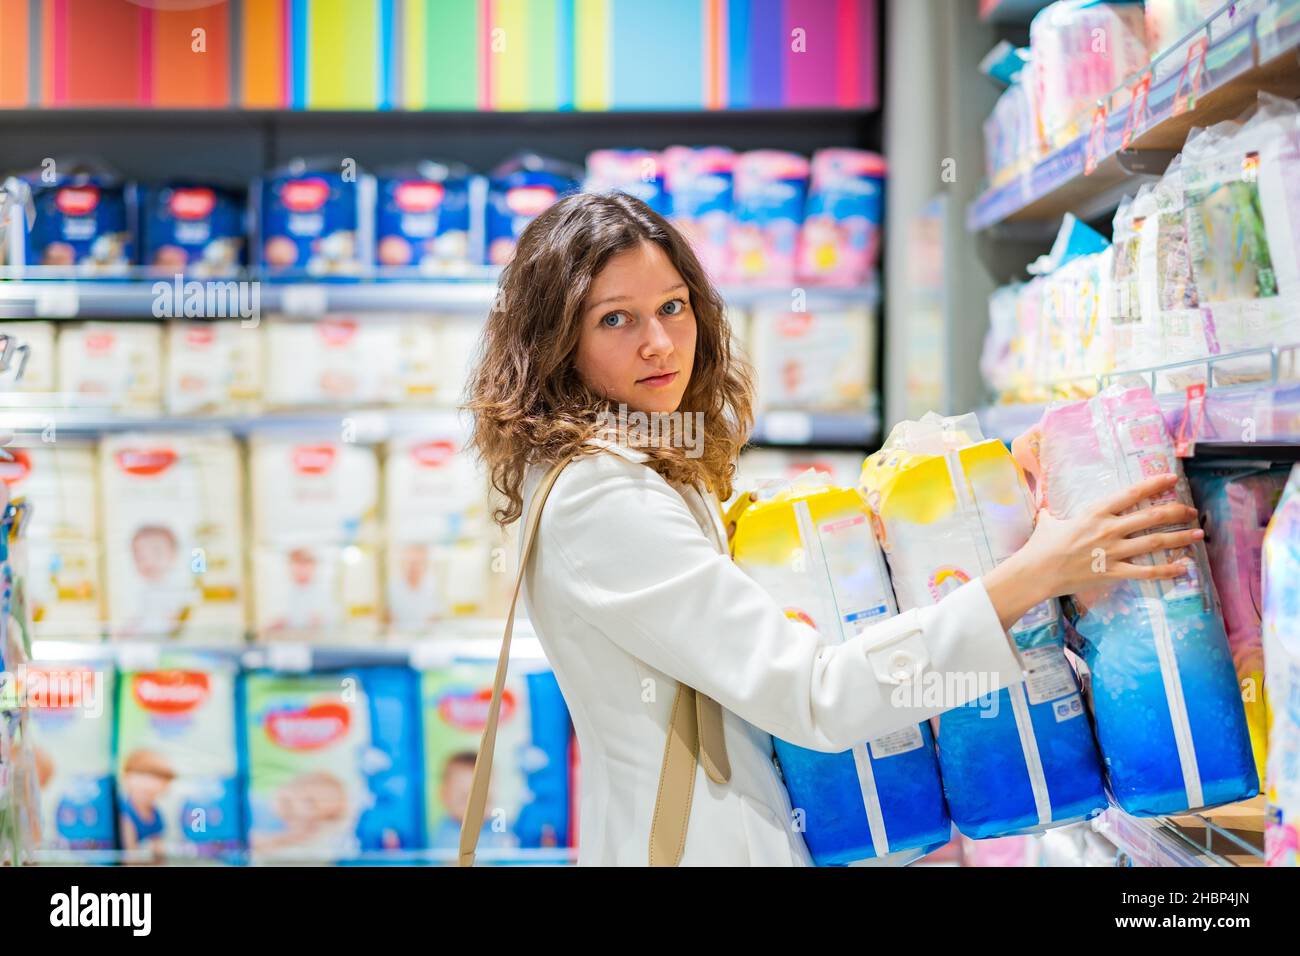 la jeune femme mère en manteau blanc achète des couches pour un usage futur, mère de nombreux enfants dans le supermarché Banque D'Images